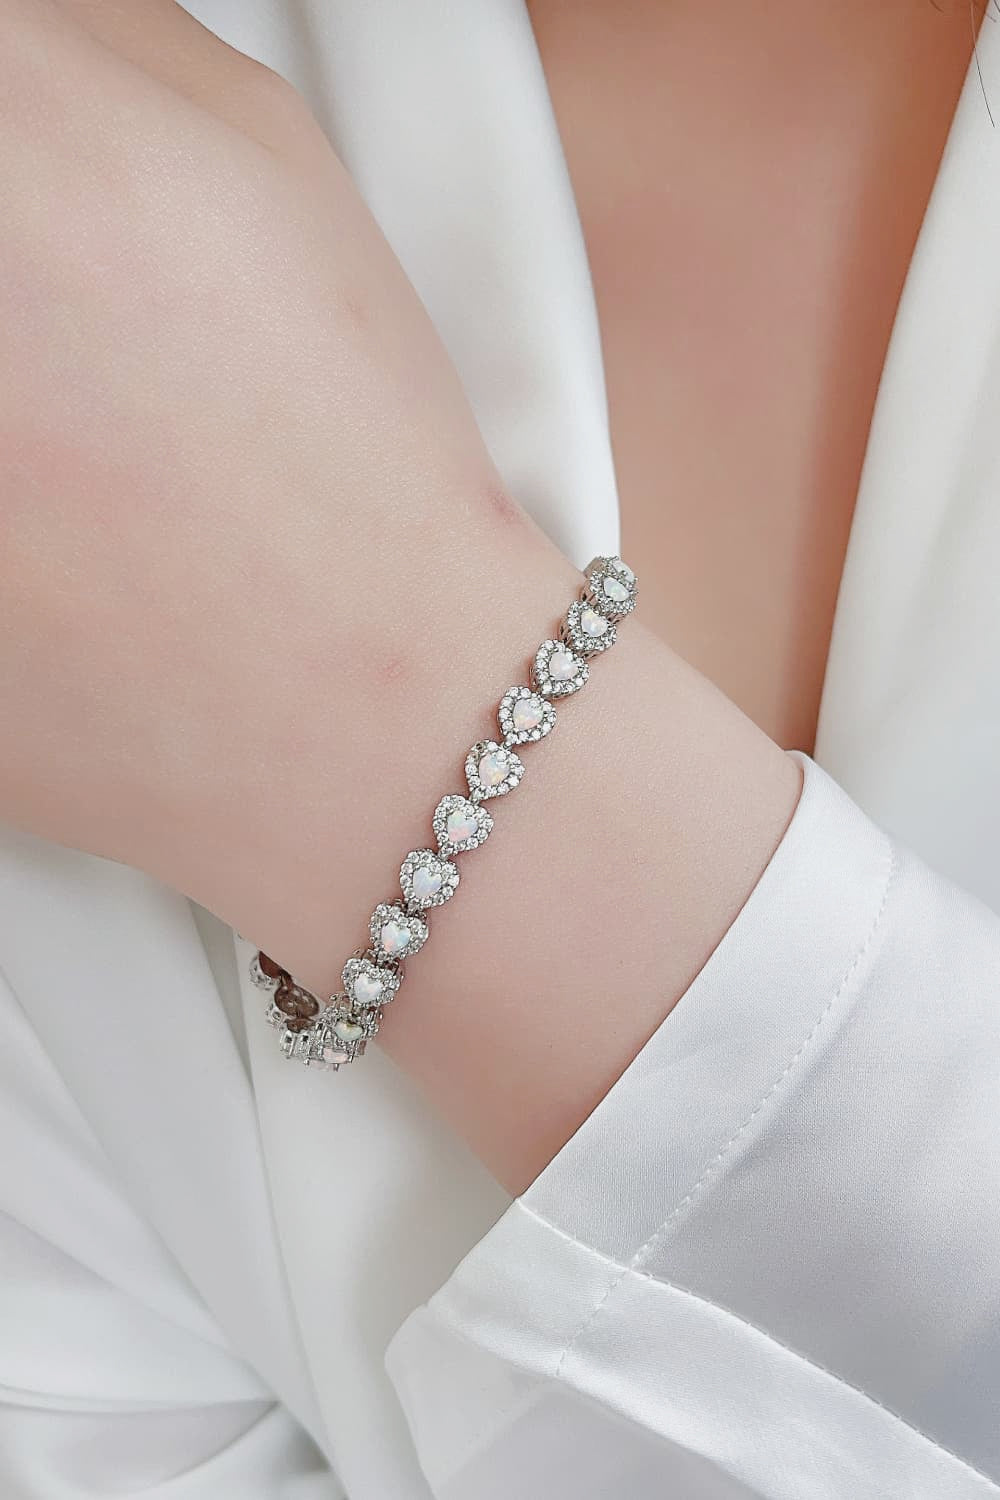 925 Sterling Silver Opal Heart Bracelet - Bracelets - FITGGINS